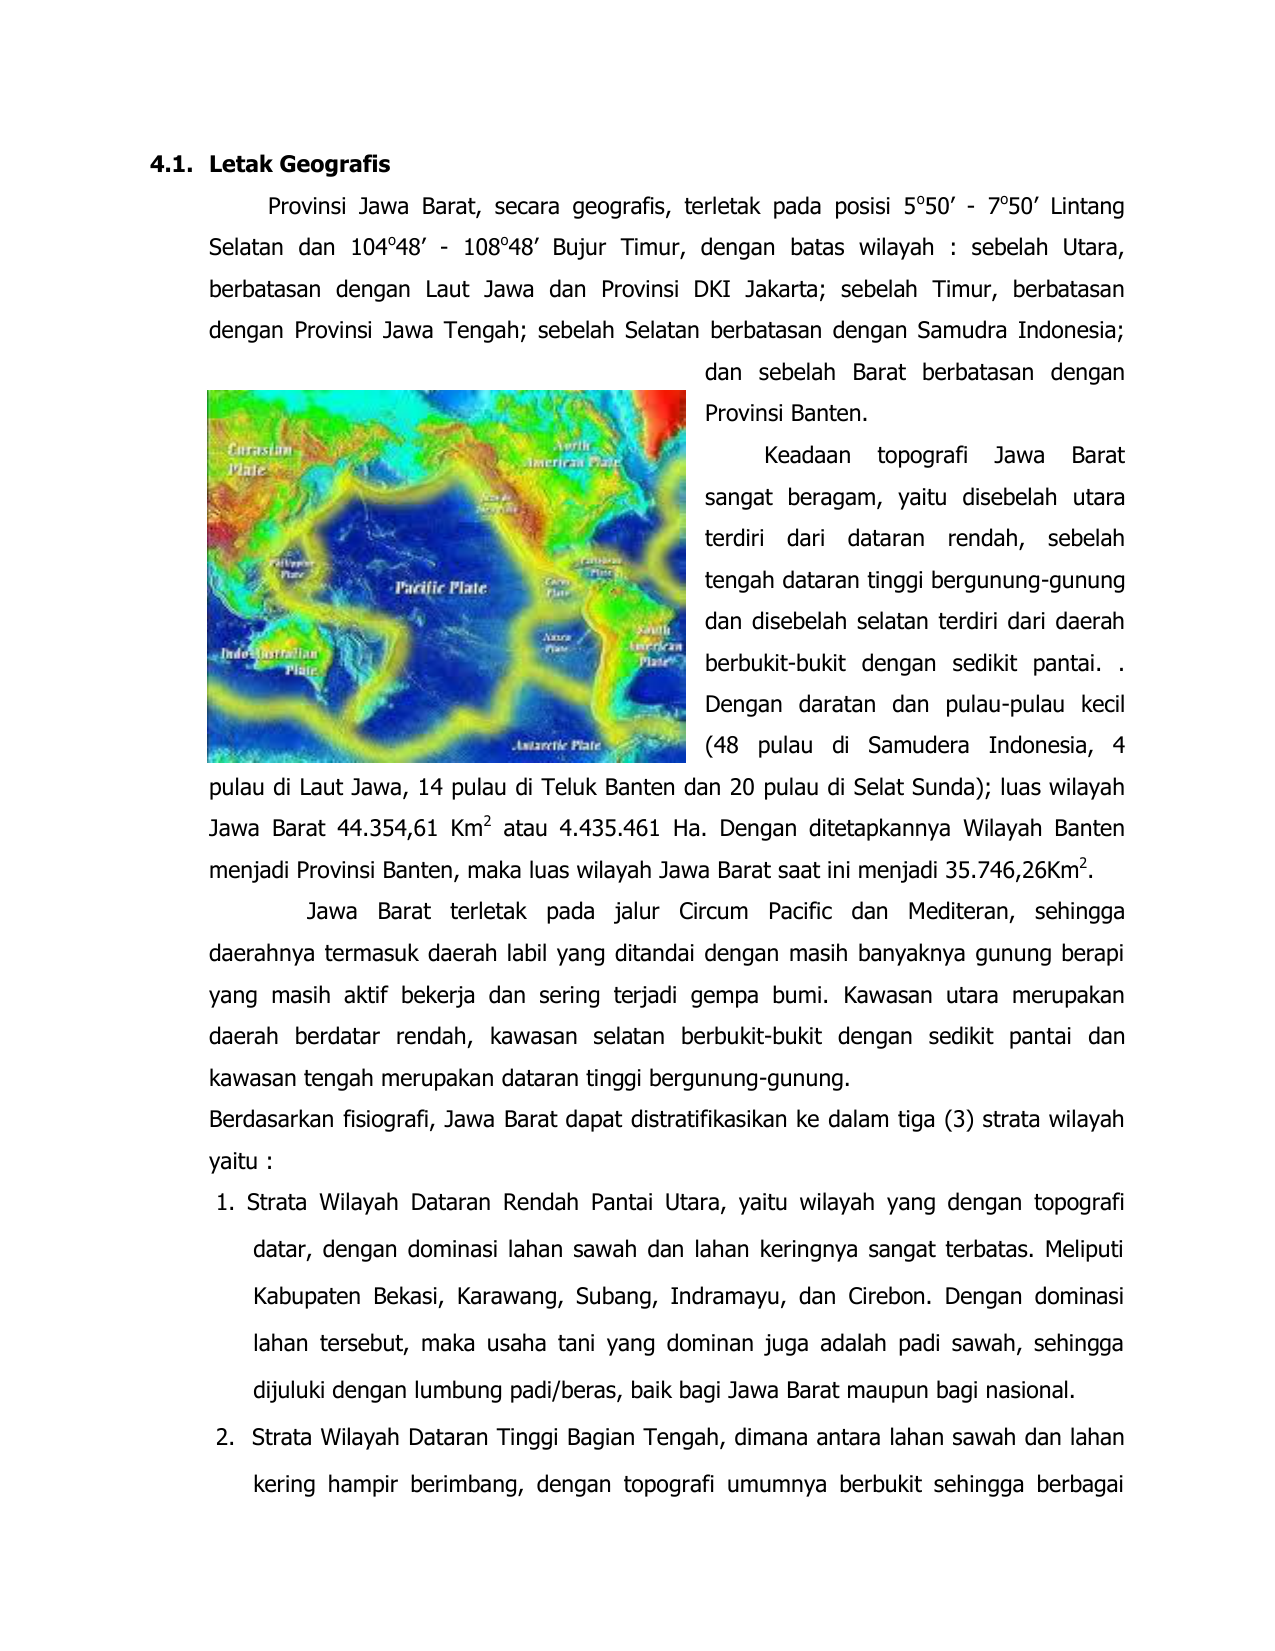 41 Letak Geografis Provinsi Jawa Barat Secara Geografis